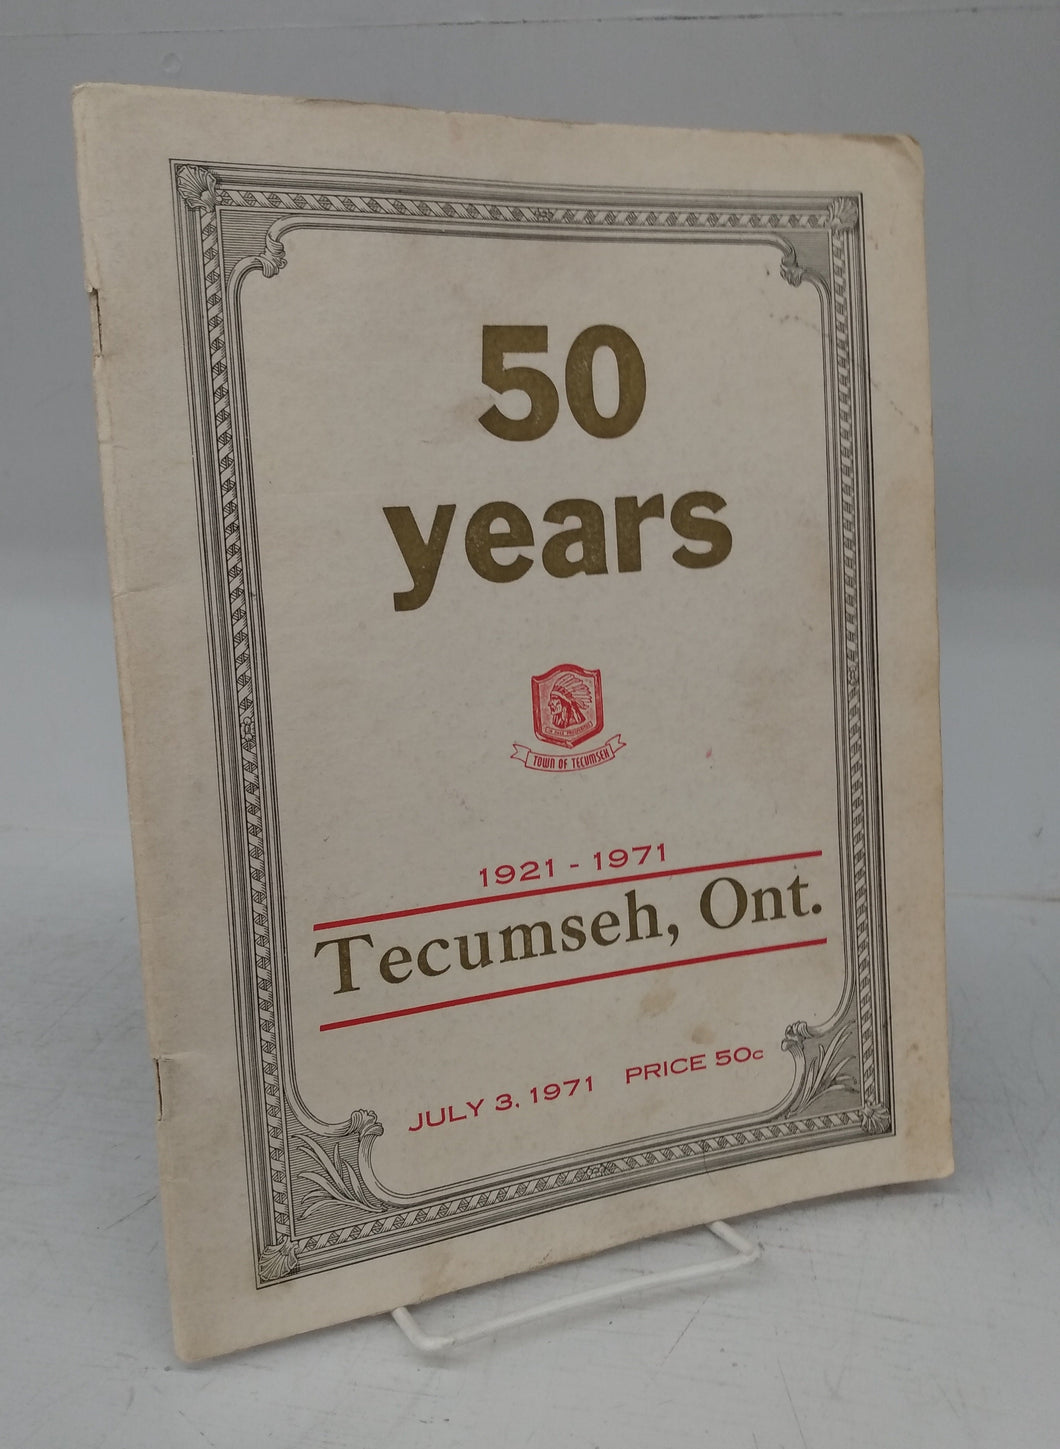 50 Years 1921-1971: Tecumseh, Ont.